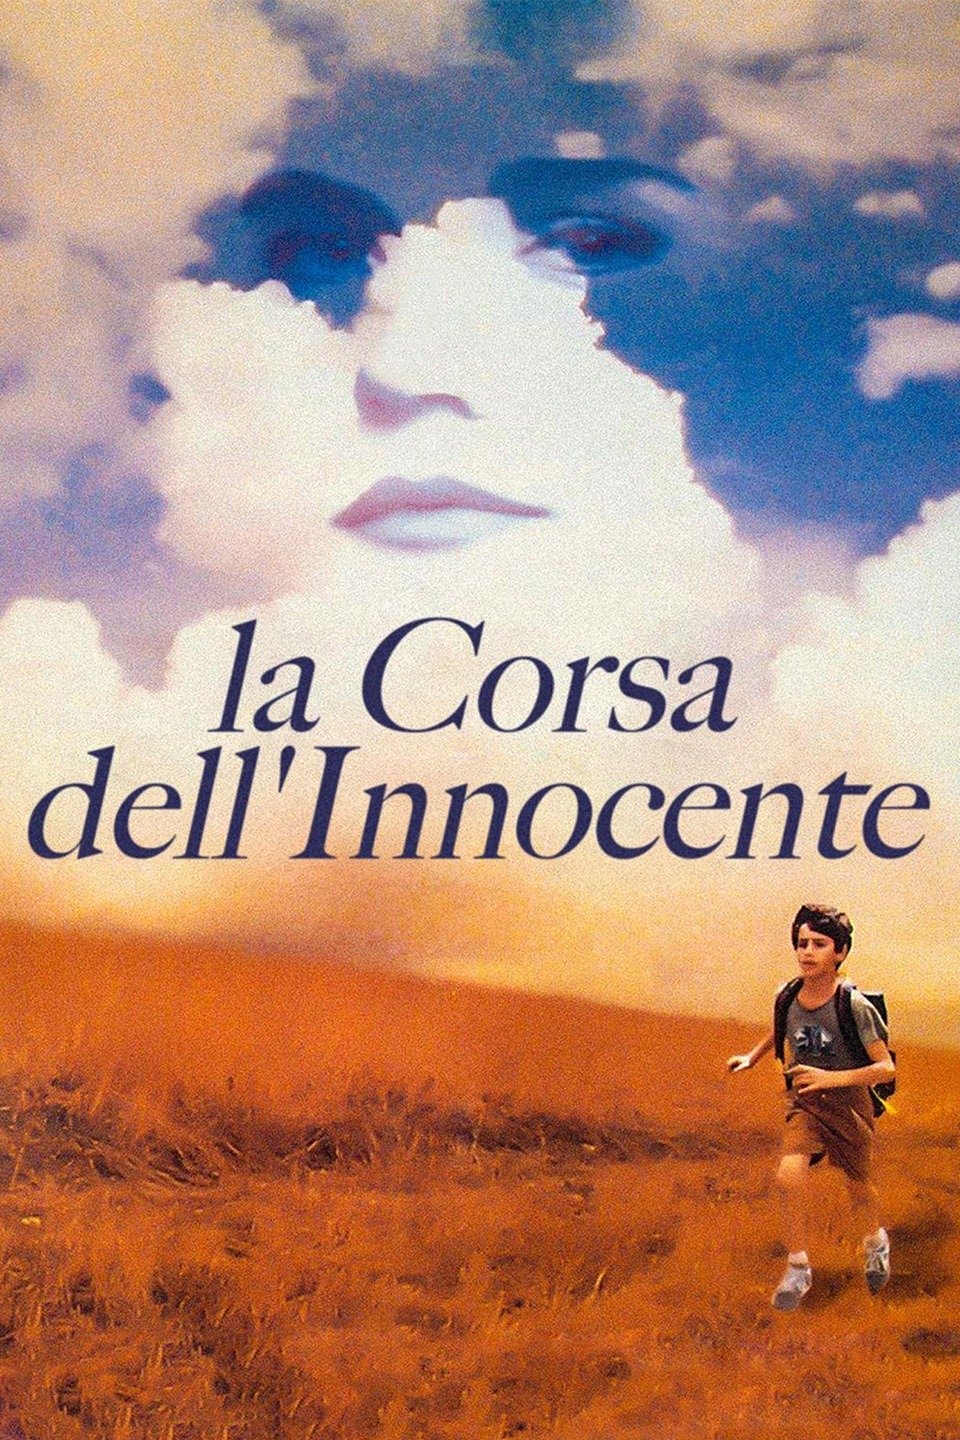 La corsa dell’innocente [HD] (1992)